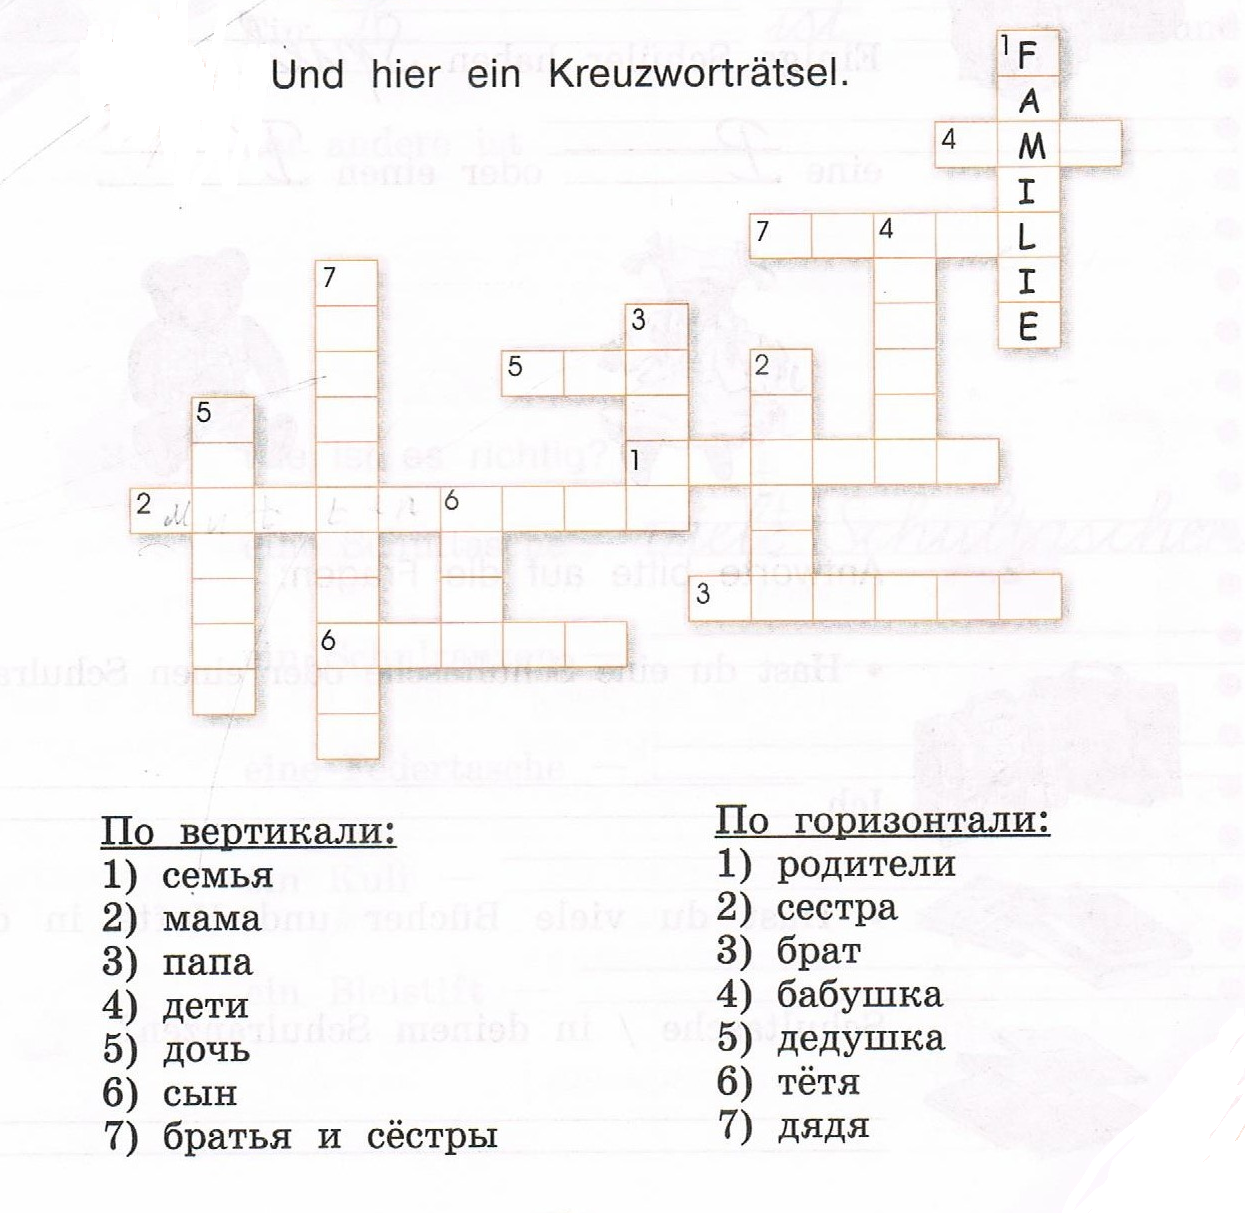 Кроссворд ответы глаголы. Кроссворд по немецкому языку. Кроссворд на немецком языке. Кроссворд по немецкому языку на тему семья. Кроссворды по немецкому языку с ответами.